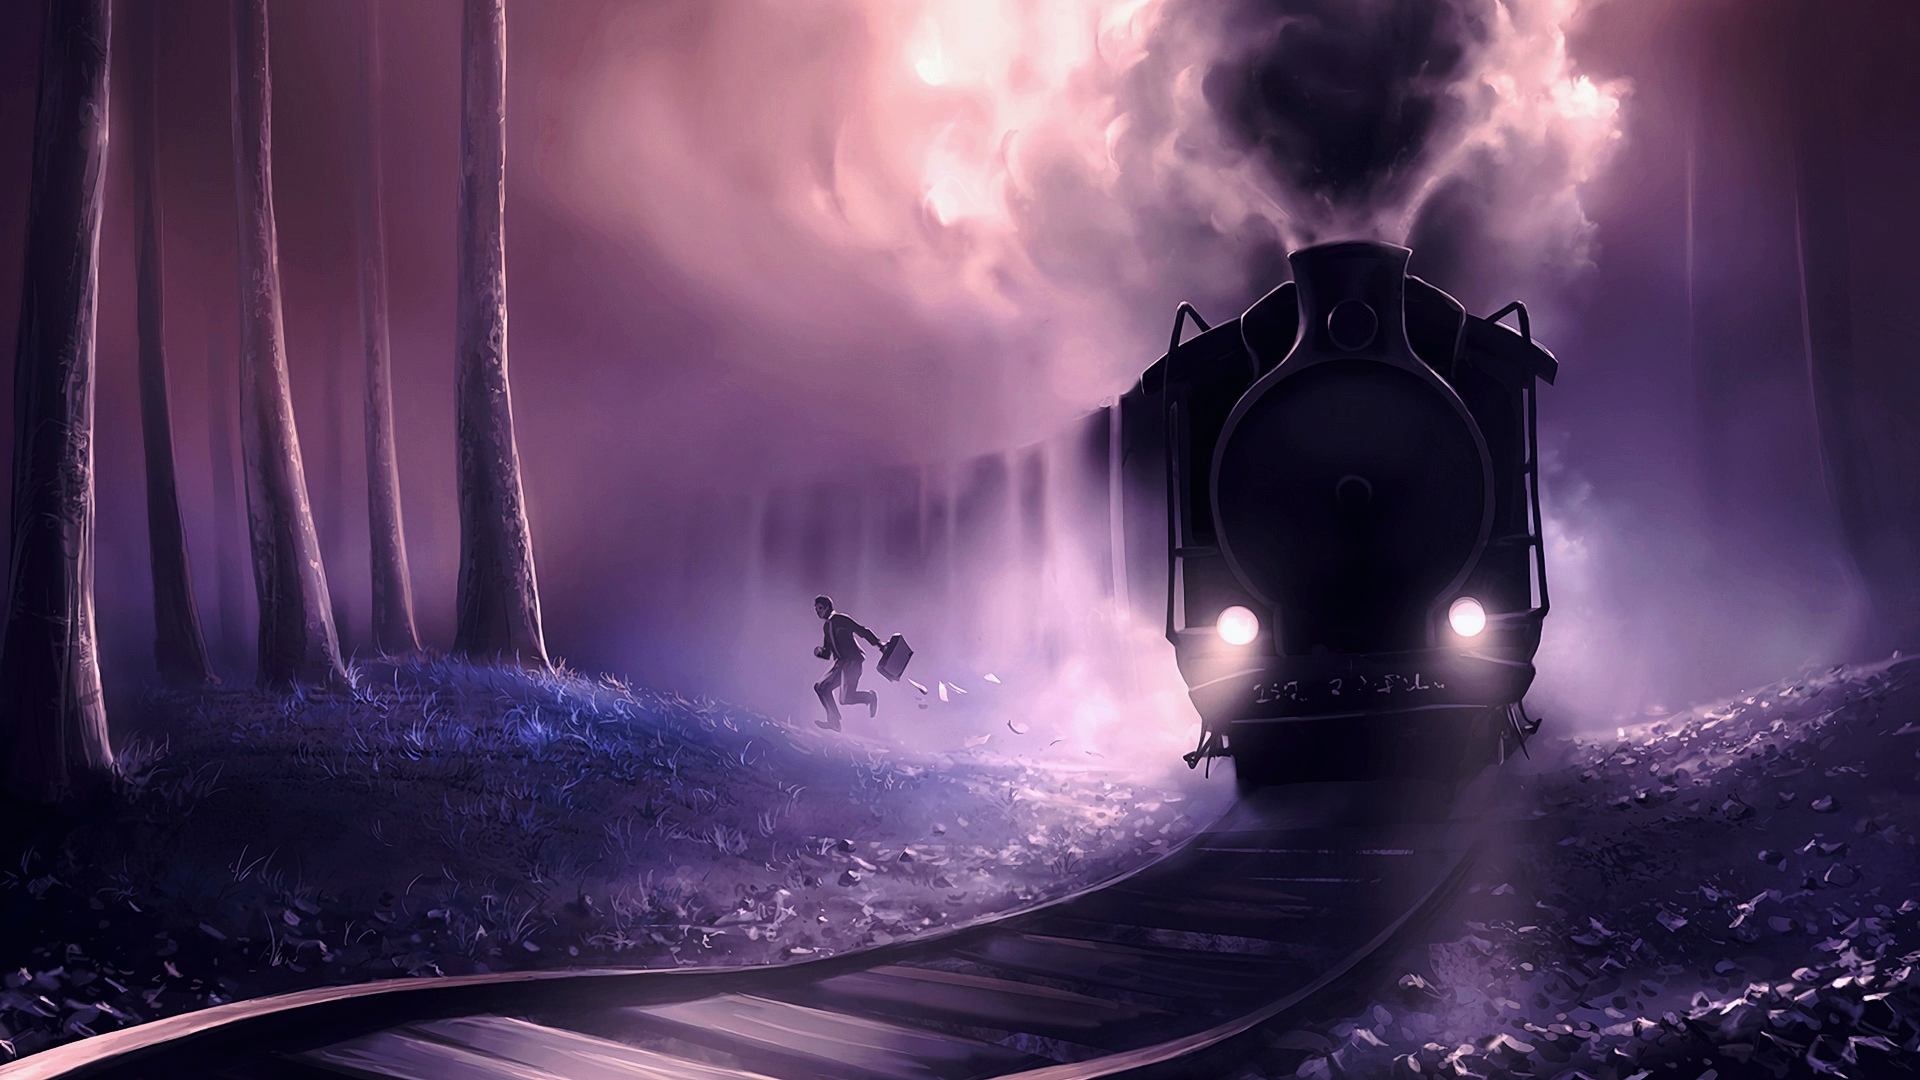 Free photo A steam train rides through a gloomy forest